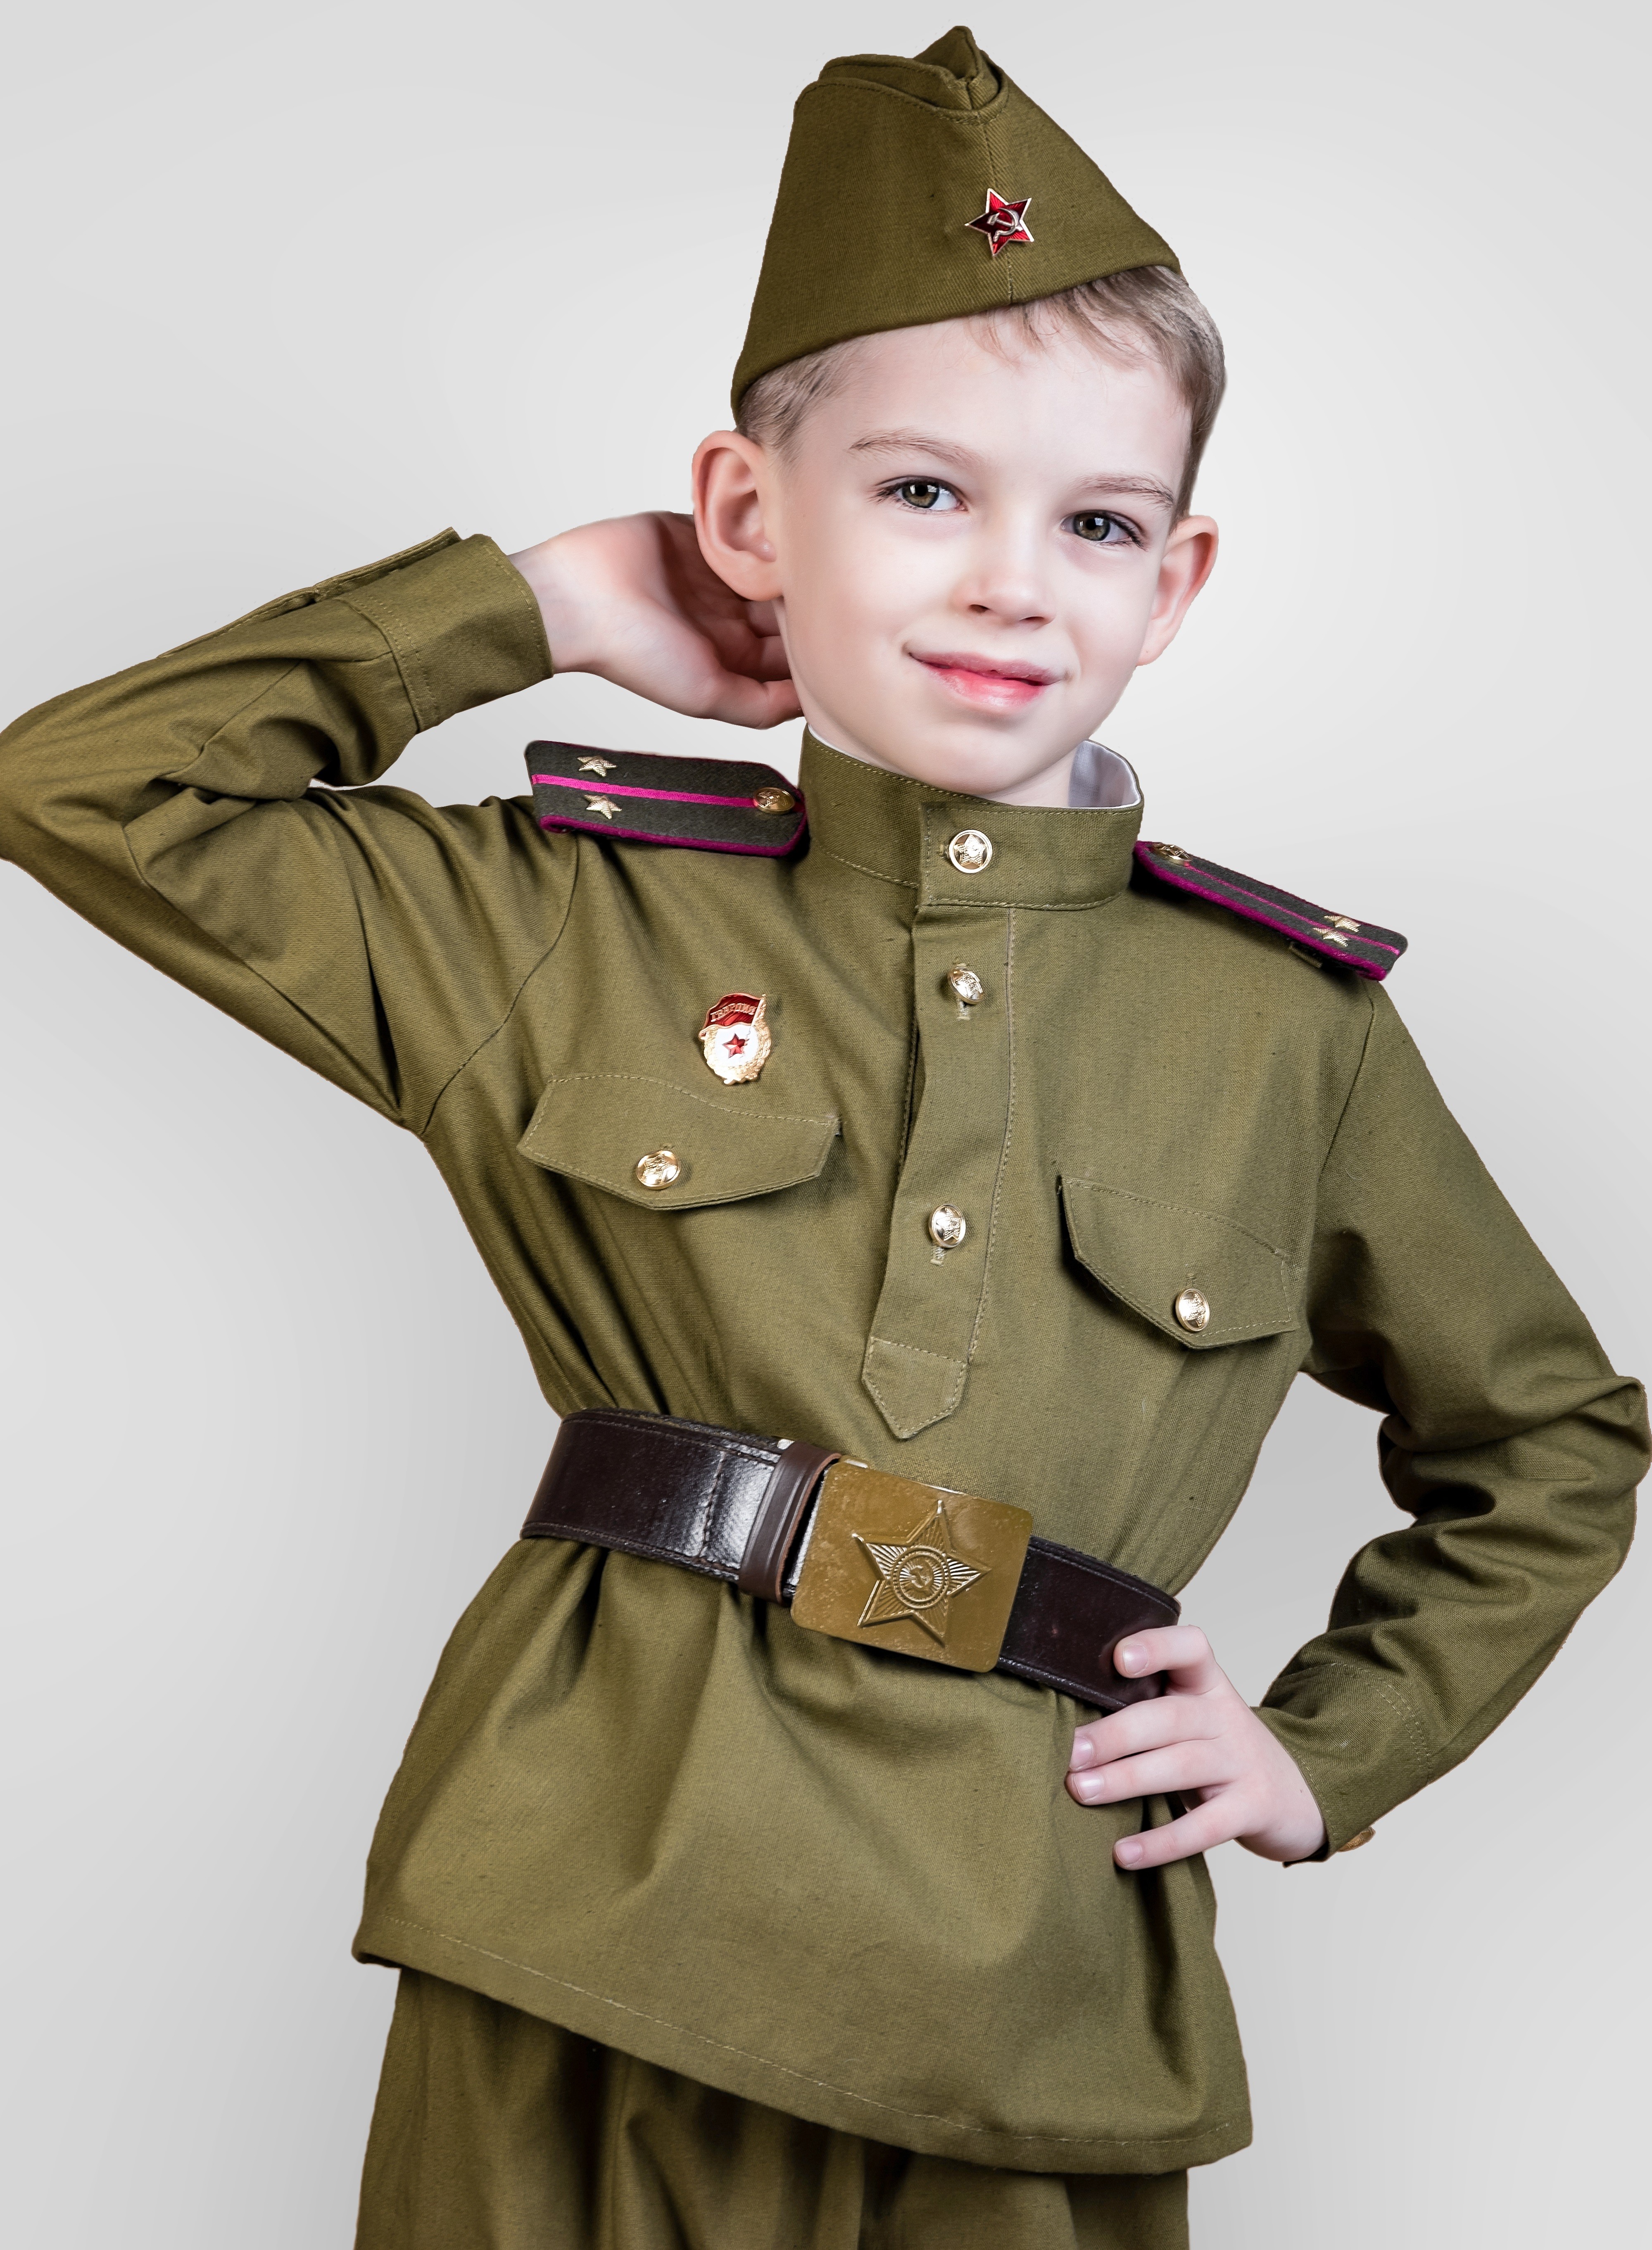 Купить военную форму военных лет. Дети в военной форме. Детская Военная форма. Солдатская форма для детей. Военнаяыорма для ребенка.